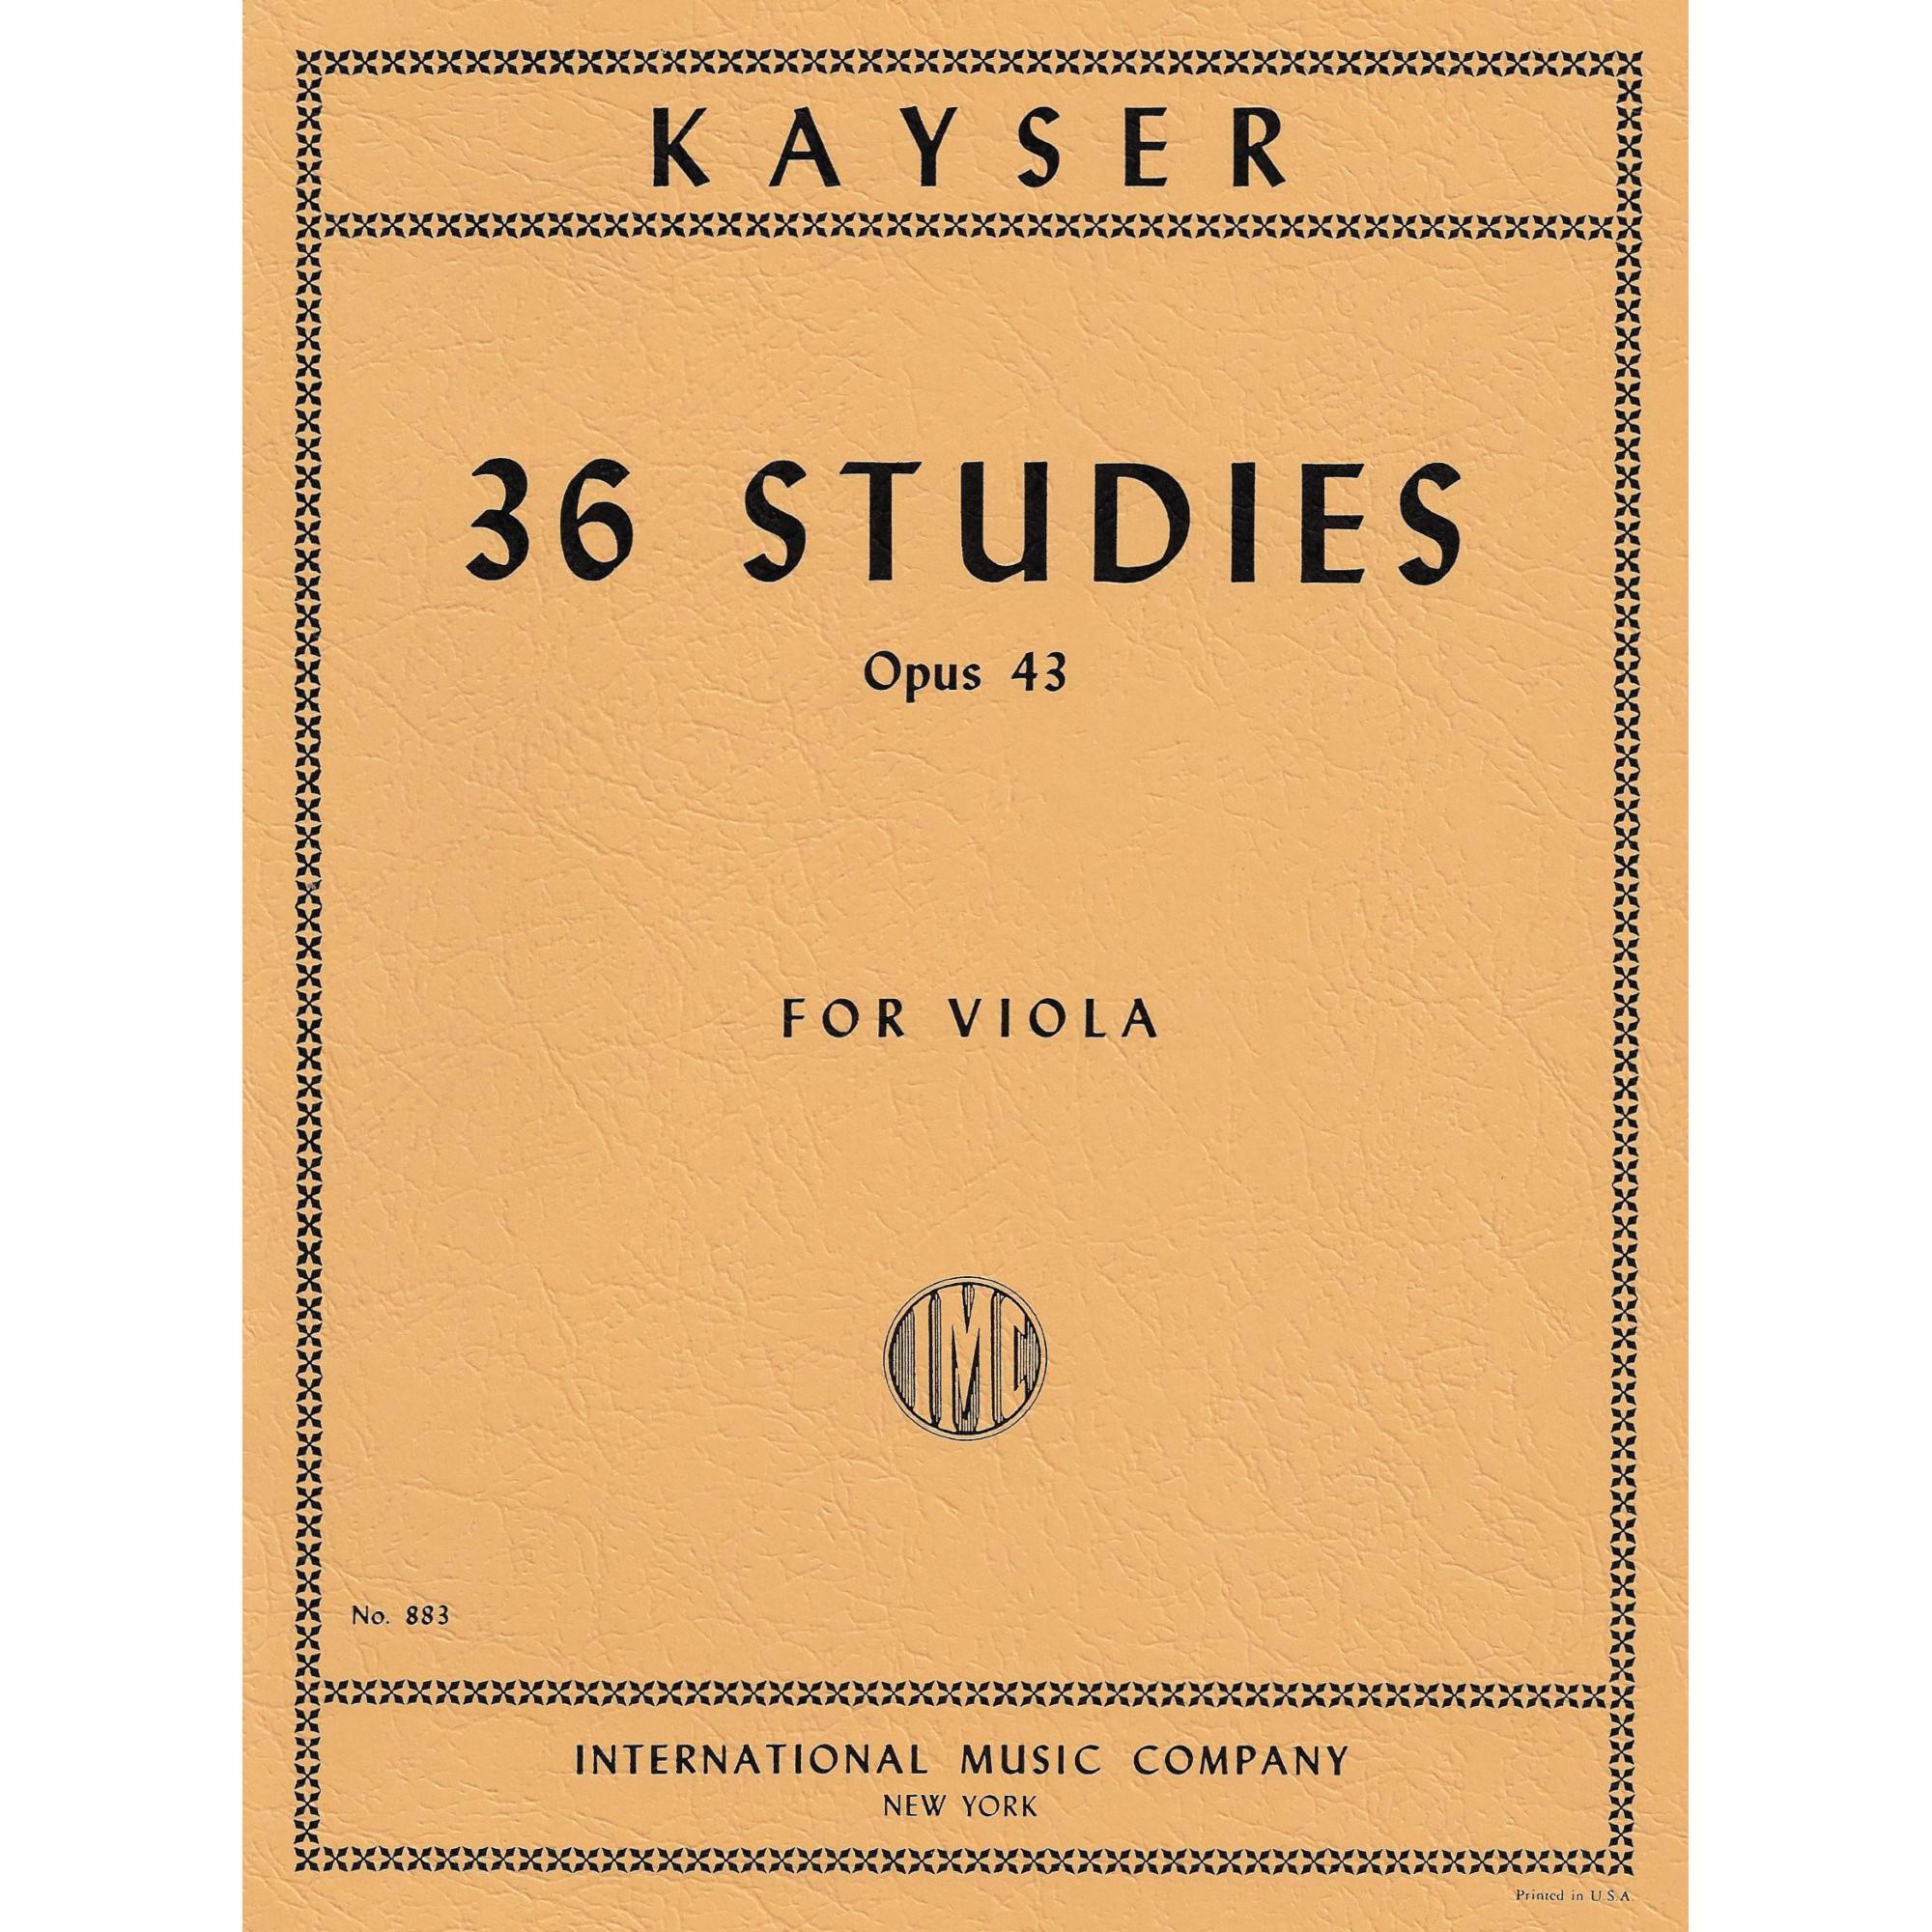 Kayser -- 36 Studies, Op. 43 for Viola